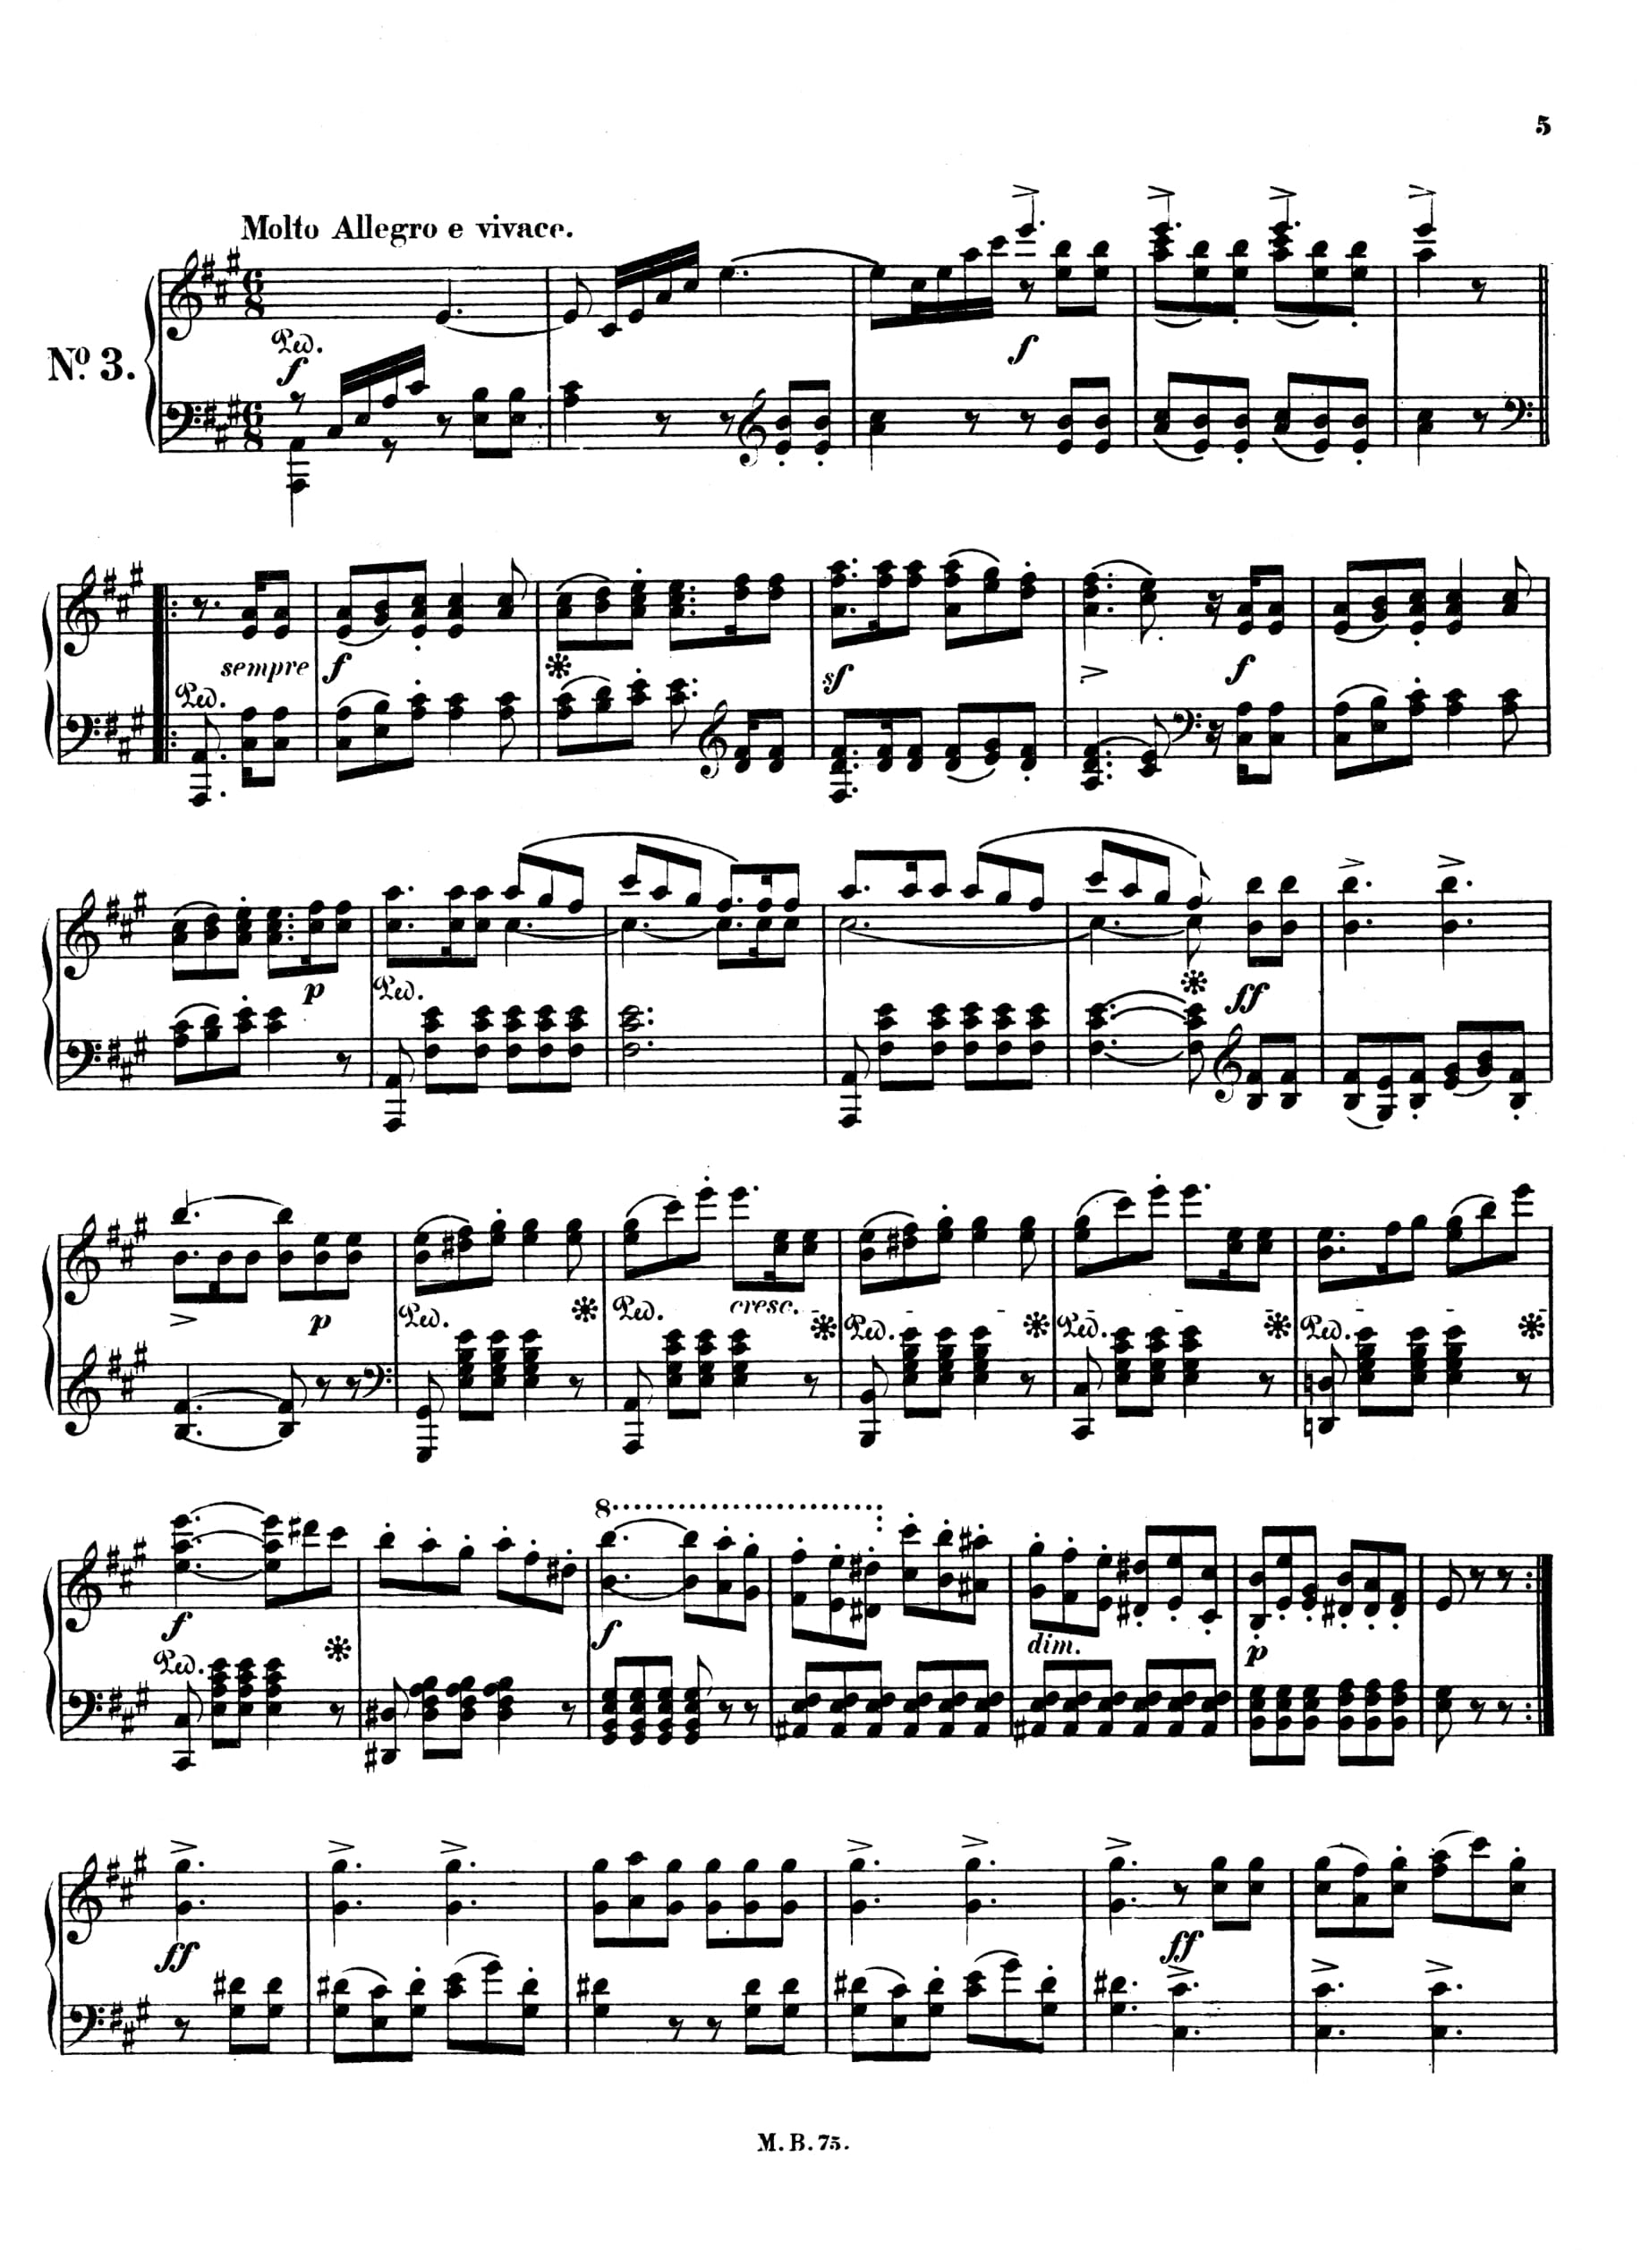 メンデルスゾーン無言歌集ピアノソロ洋書楽譜「Mendelssohn SONGS WITHOUT WORDS EDITION PETERS | メンデルスゾーン  無言歌集 | oxygencycles.in